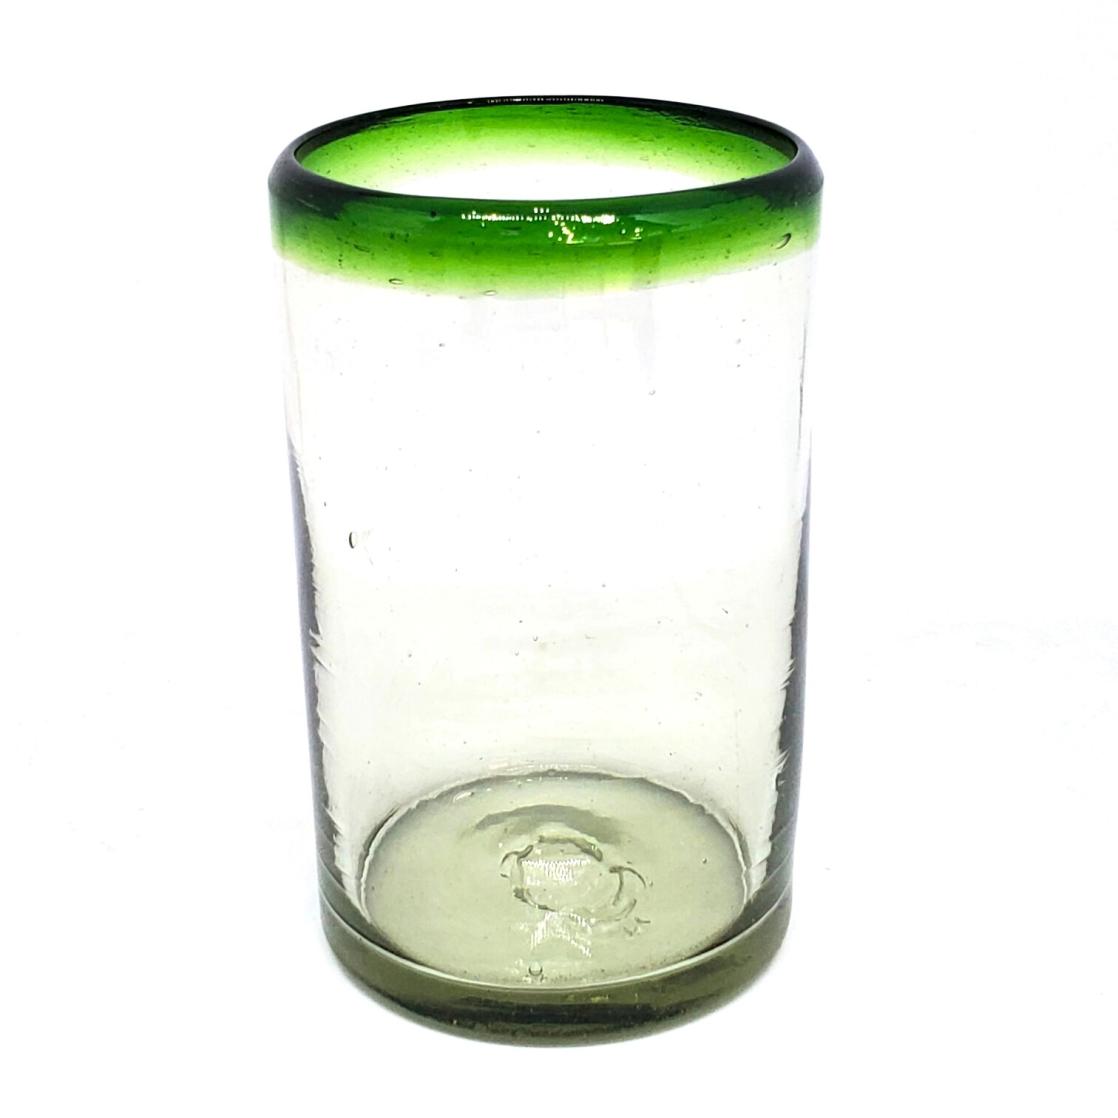 Borde de Color al Mayoreo / vasos grandes con borde verde esmeralda / stos artesanales vasos le darn un toque clsico a su bebida favorita.